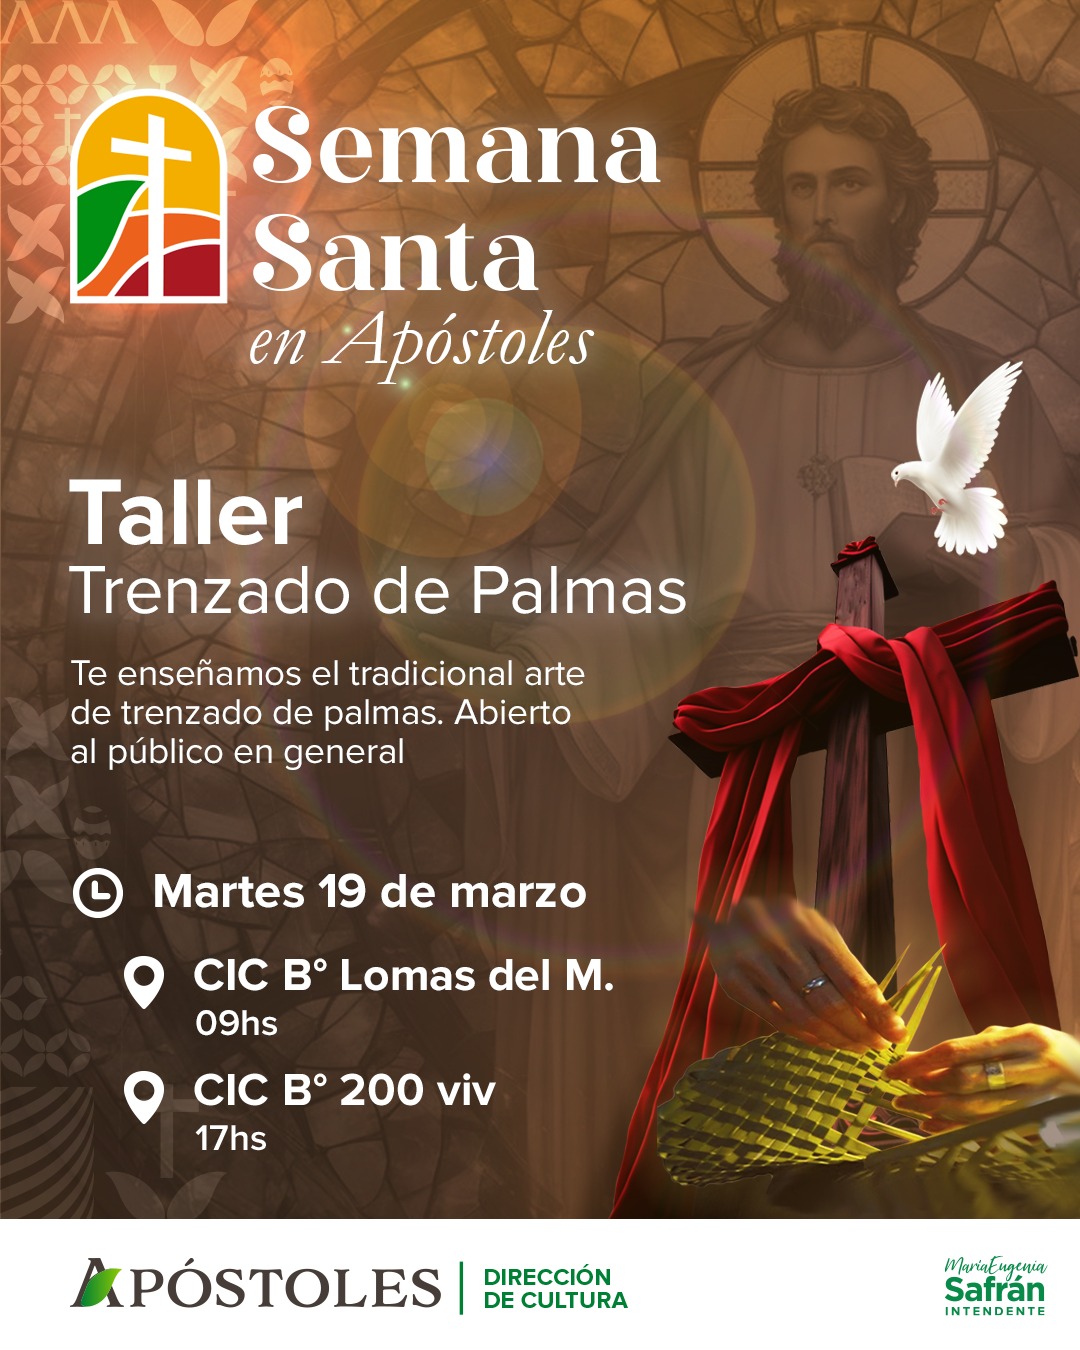 Semana Santa en Apóstoles: taller de trenzado de palmas en diferentes puntos de la ciudad imagen-18